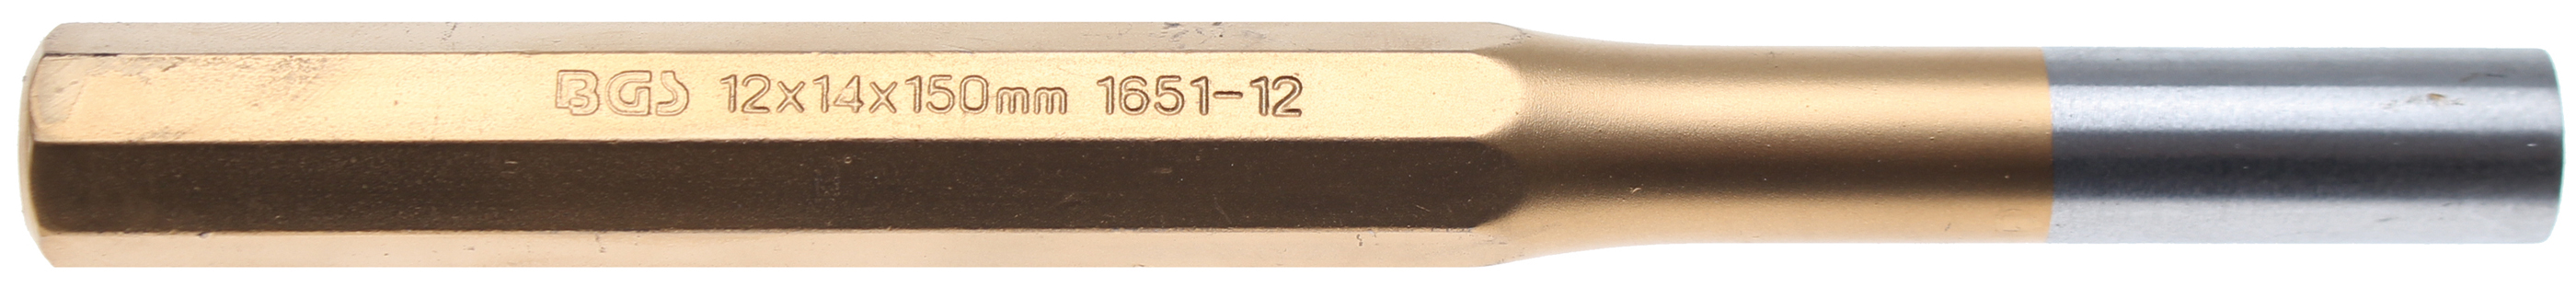 BGS 1651-12 Dorn 12 mm pentru mecanici, lungime 150 mm